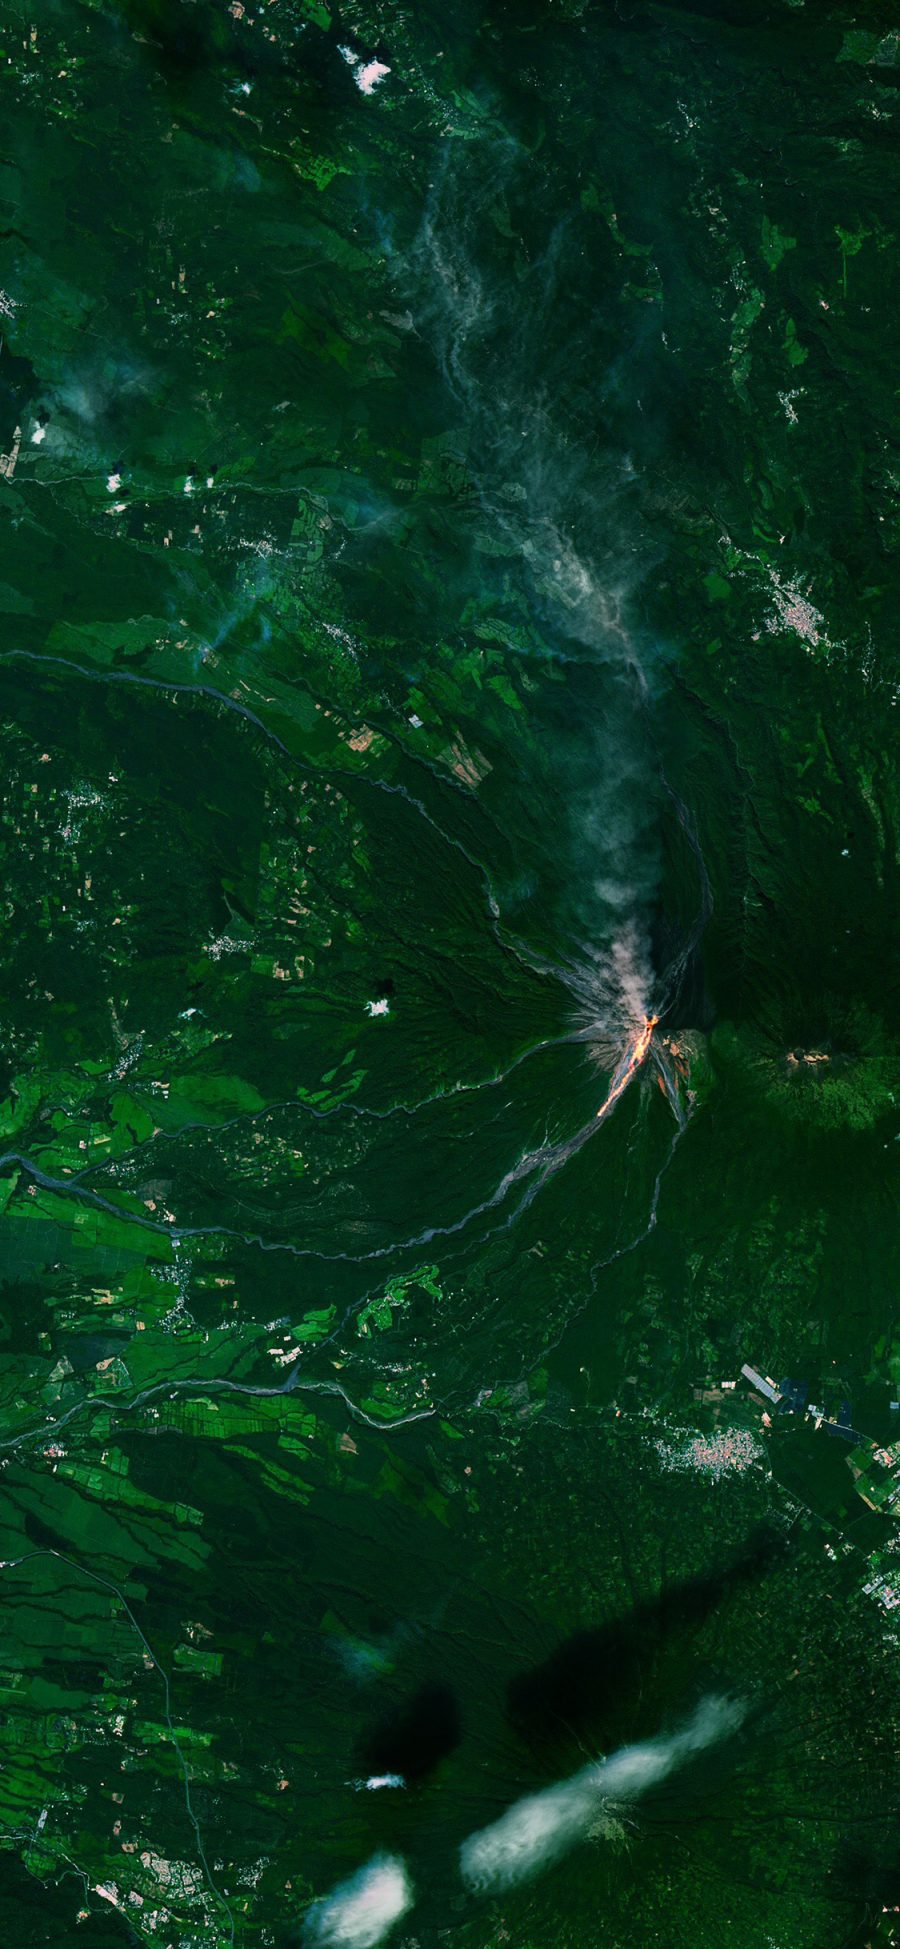 [2436×1125]地理 地貌 火山 卫星图 地质 绿色 苹果手机壁纸图片